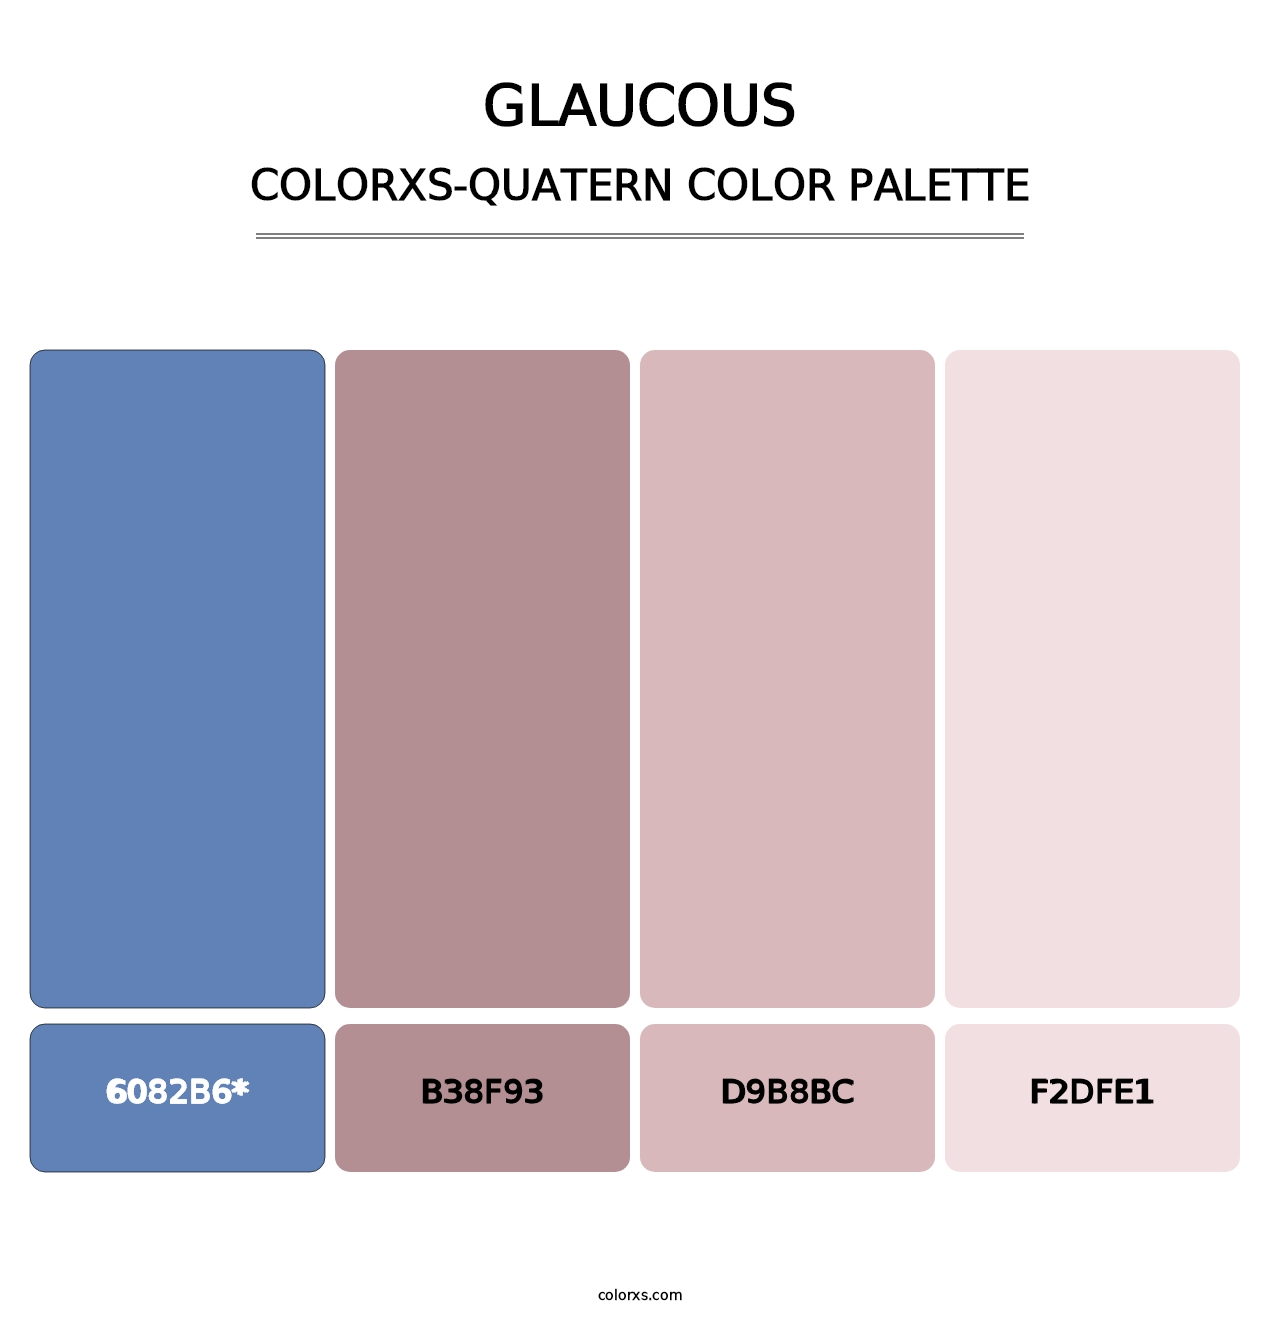 Glaucous - Colorxs Quatern Palette